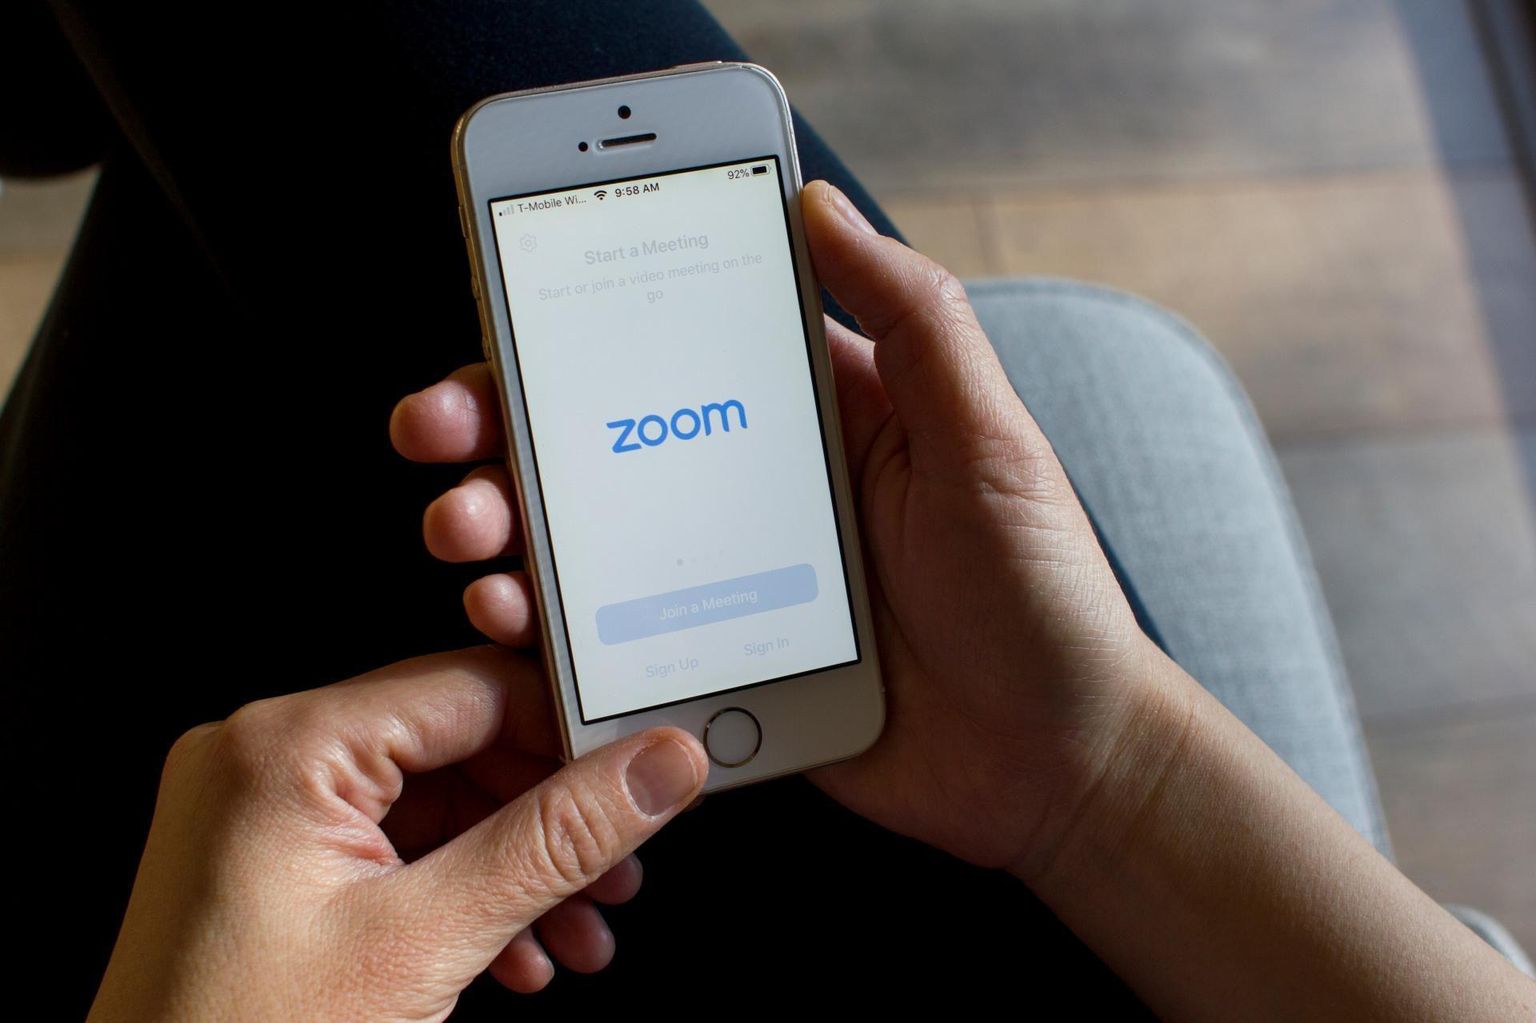 Võistluspäev algab sissejuhatusega Zoomi veebikeskkonnas.